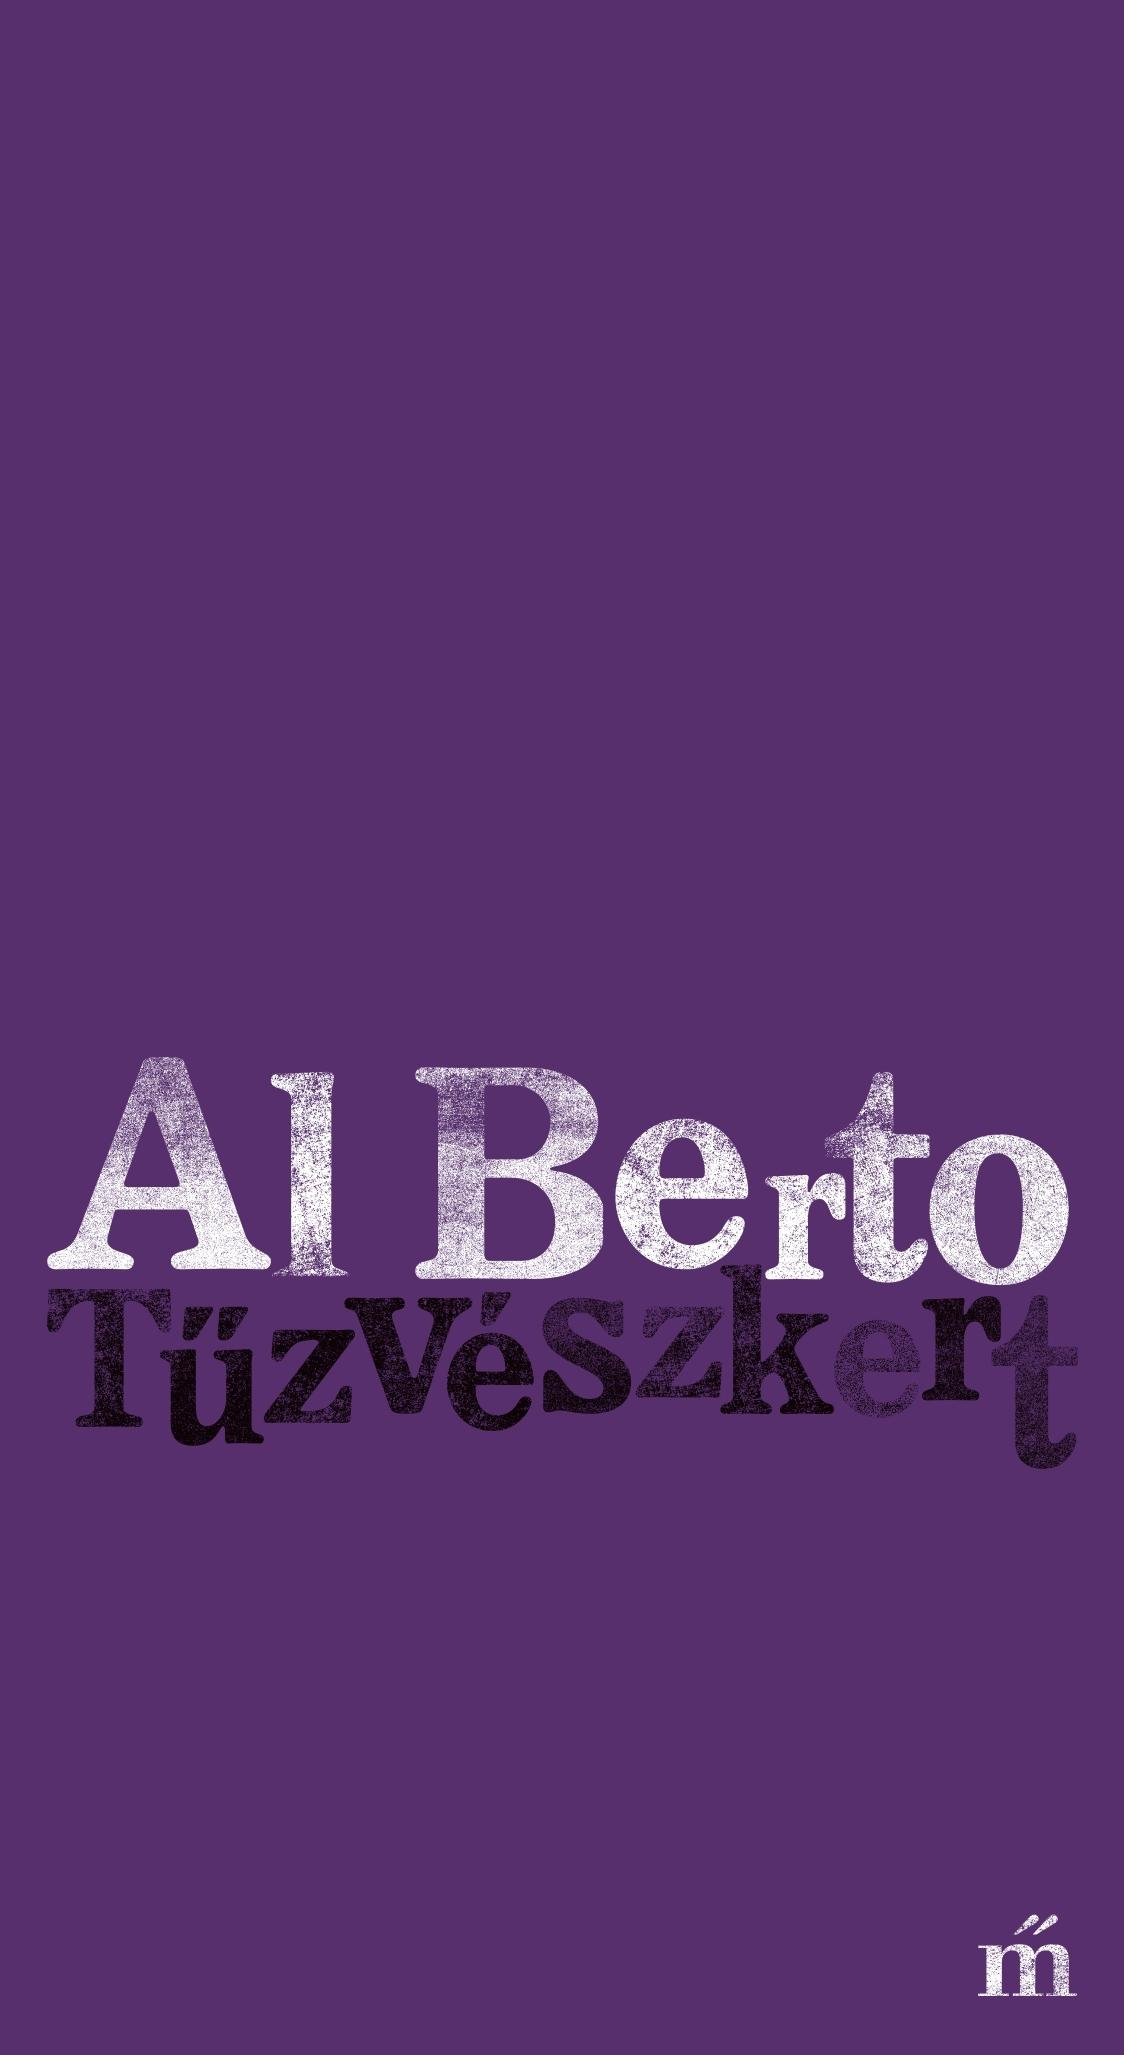 Berto, Al - Tűzvészkert [outlet]